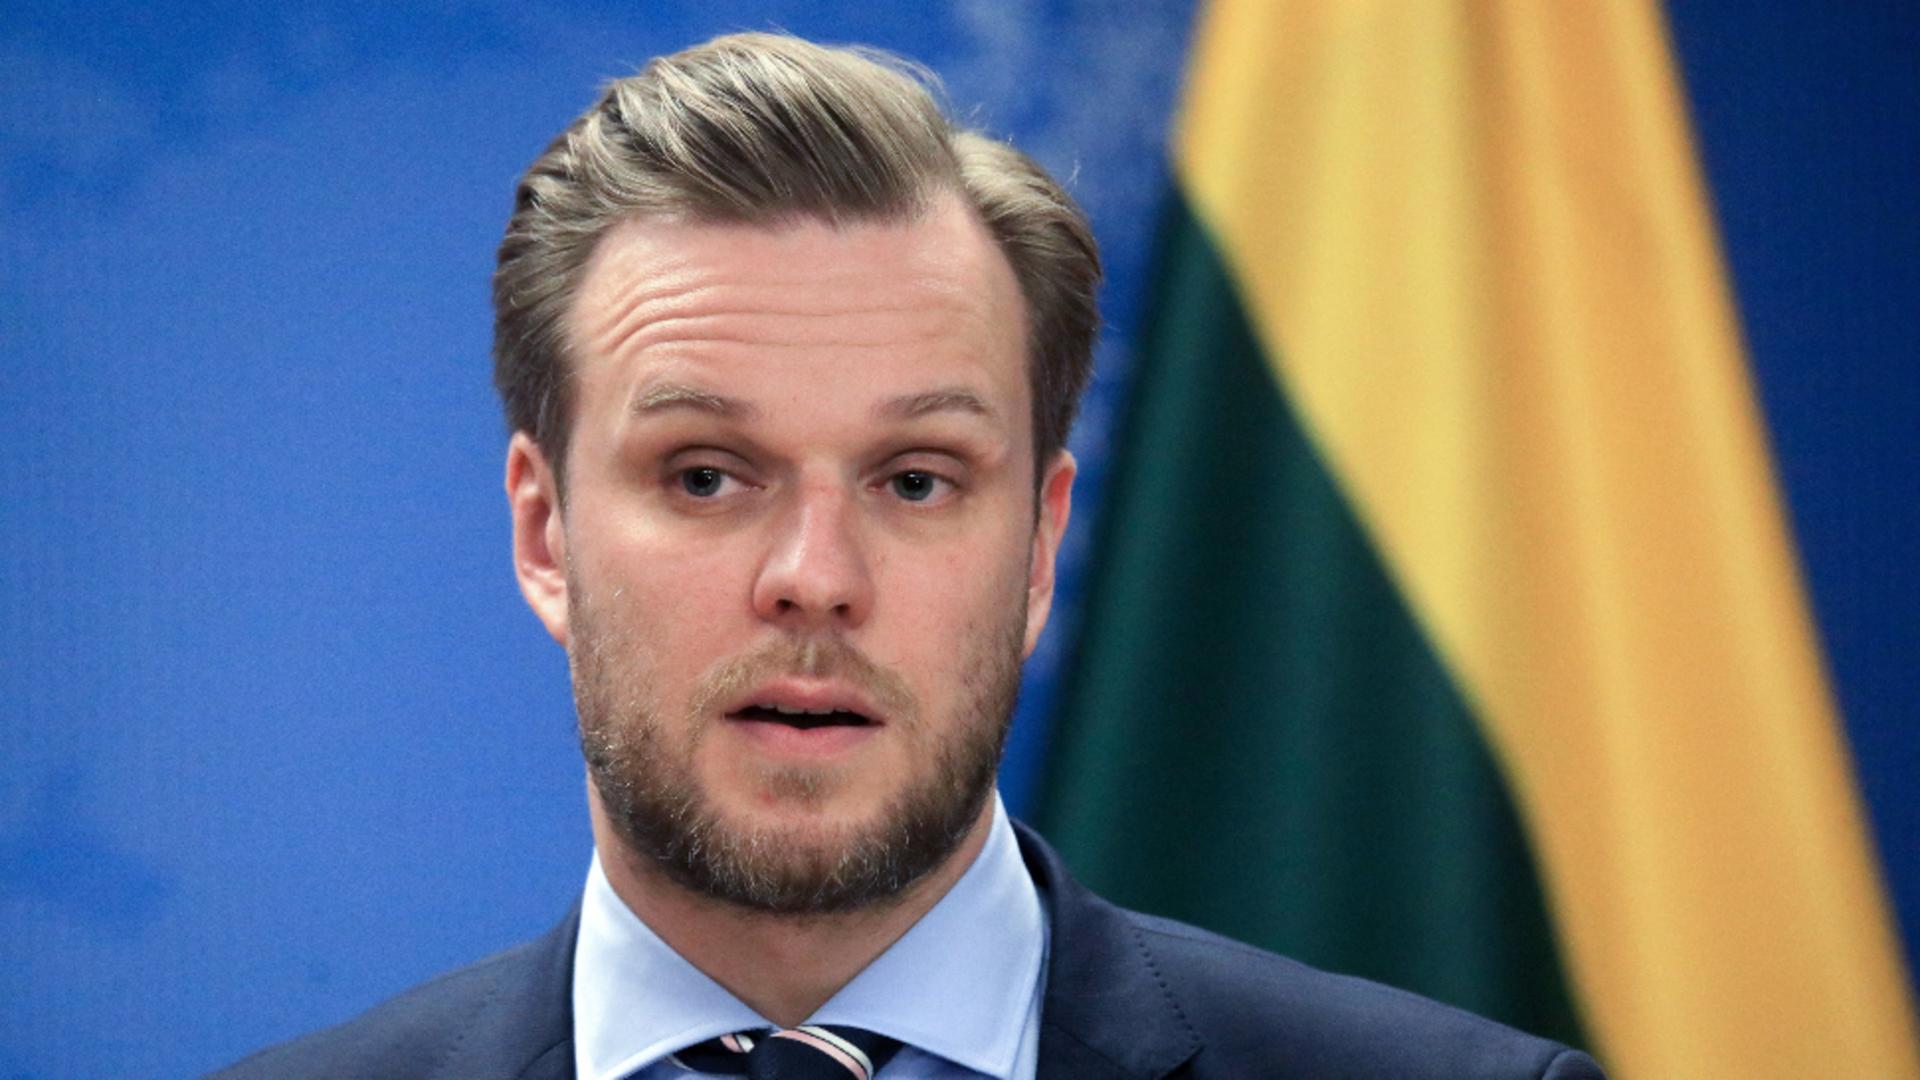 Lituania îl expulzează pe ambasadorul Rusiei / Foto: Profi Media